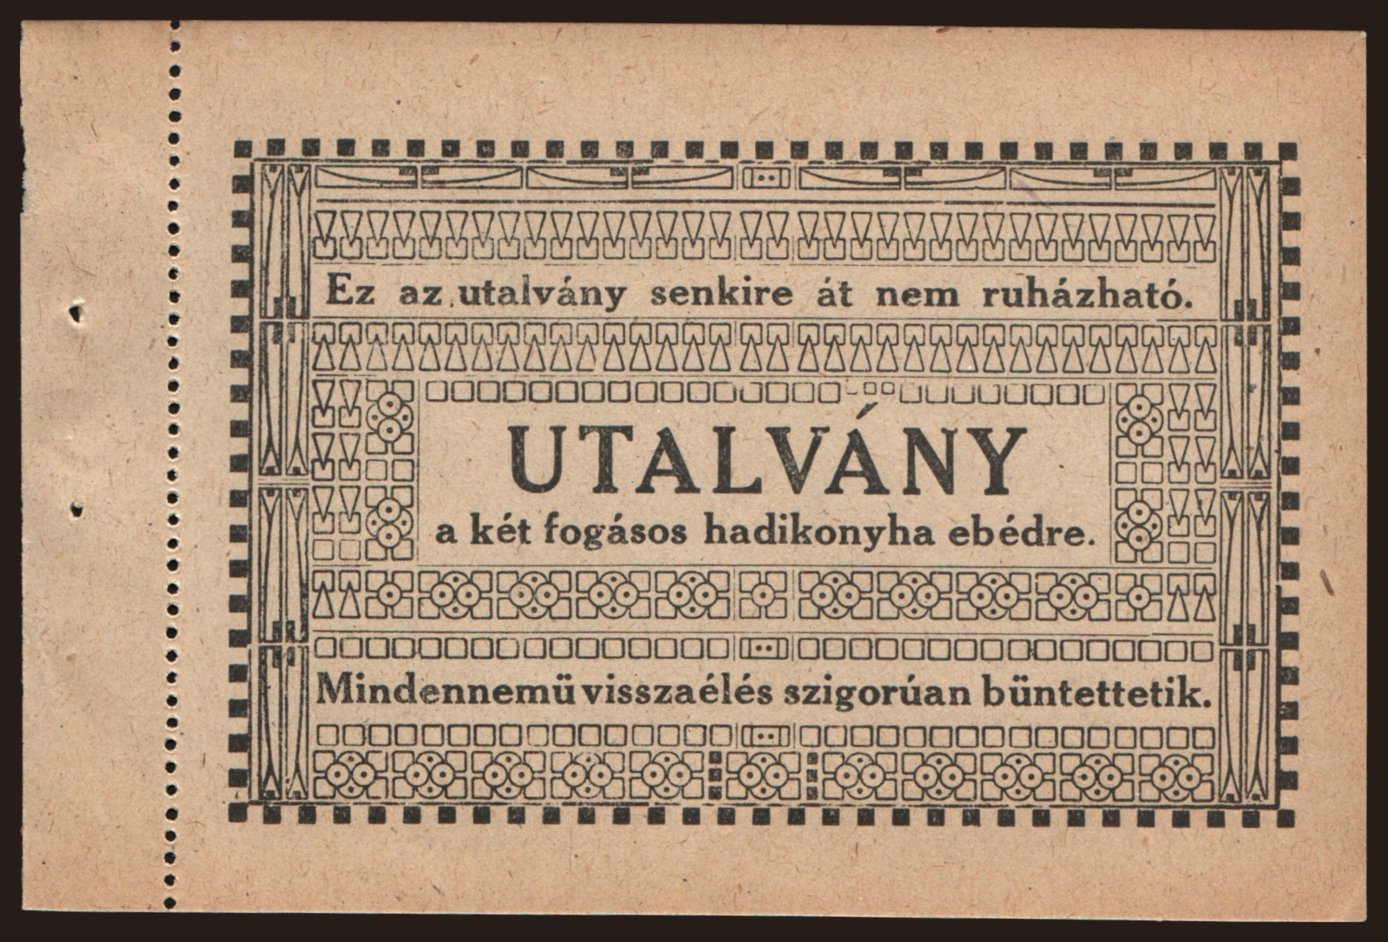 Budapest, Utalvány két fogásos hadikonyha ebédre, 191?